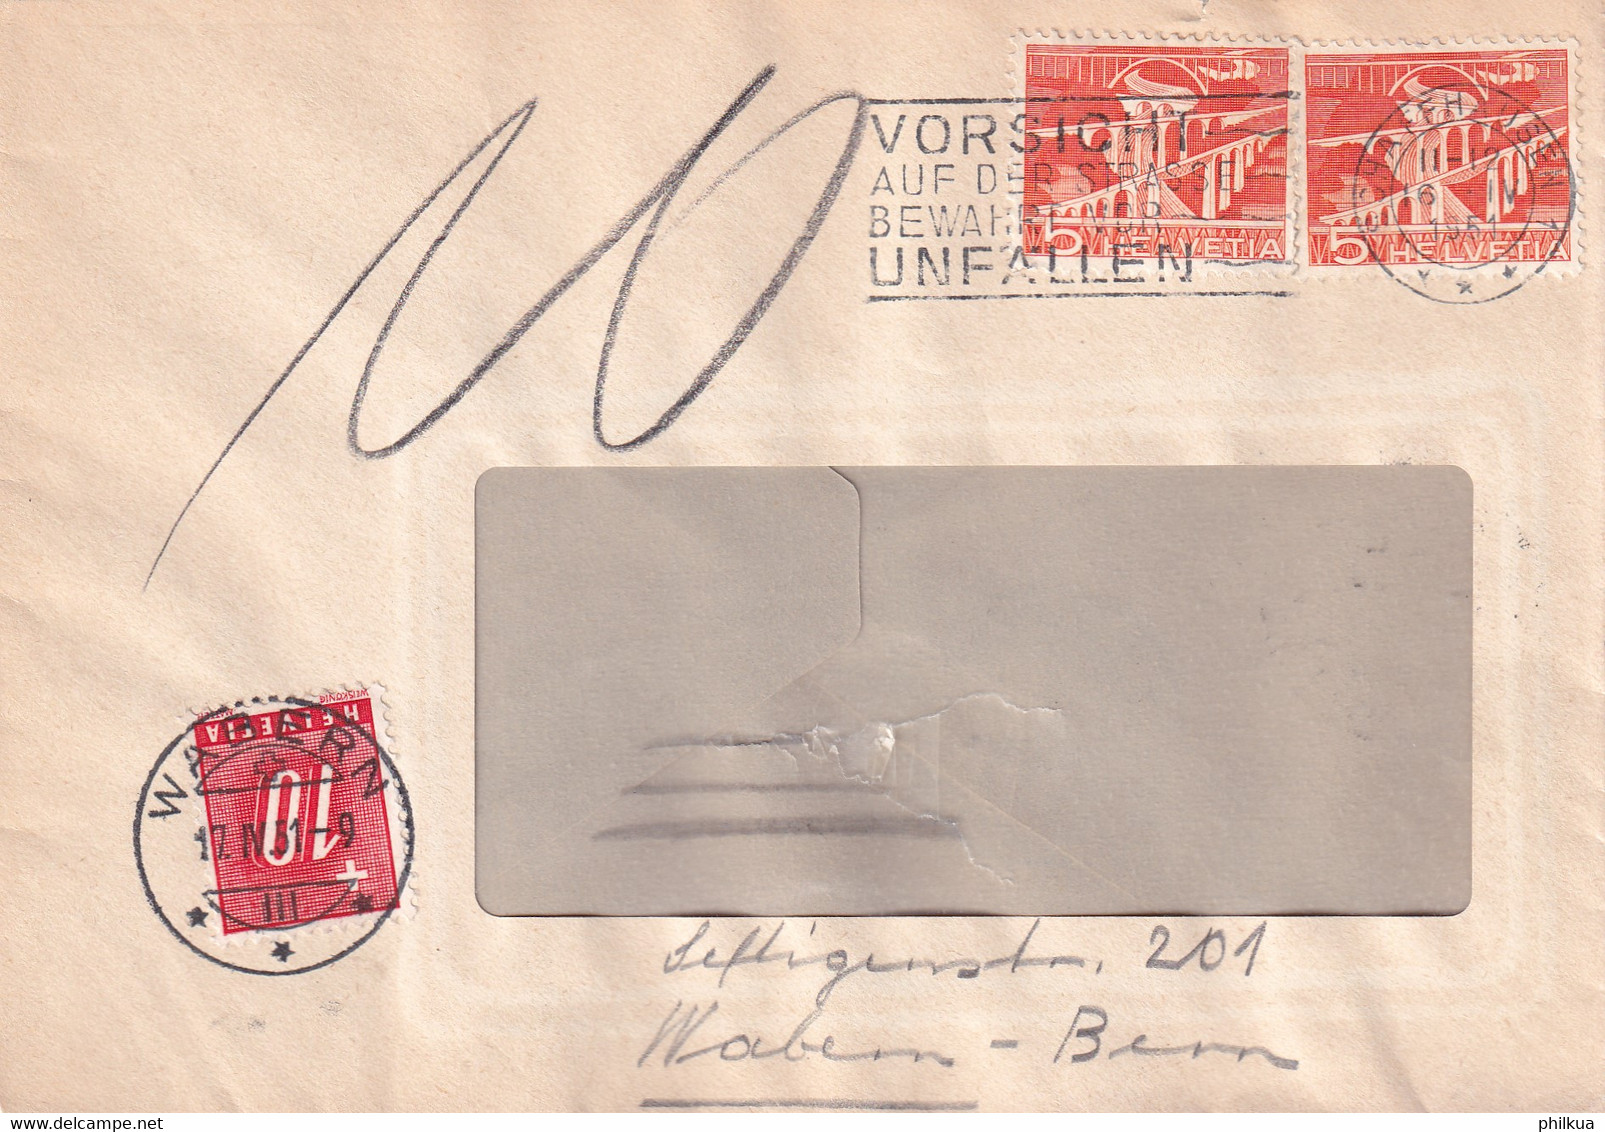 298 Und Portomarke 55 Auf Brief Von Schaffhausen Nach Wabern Bern - Postage Due